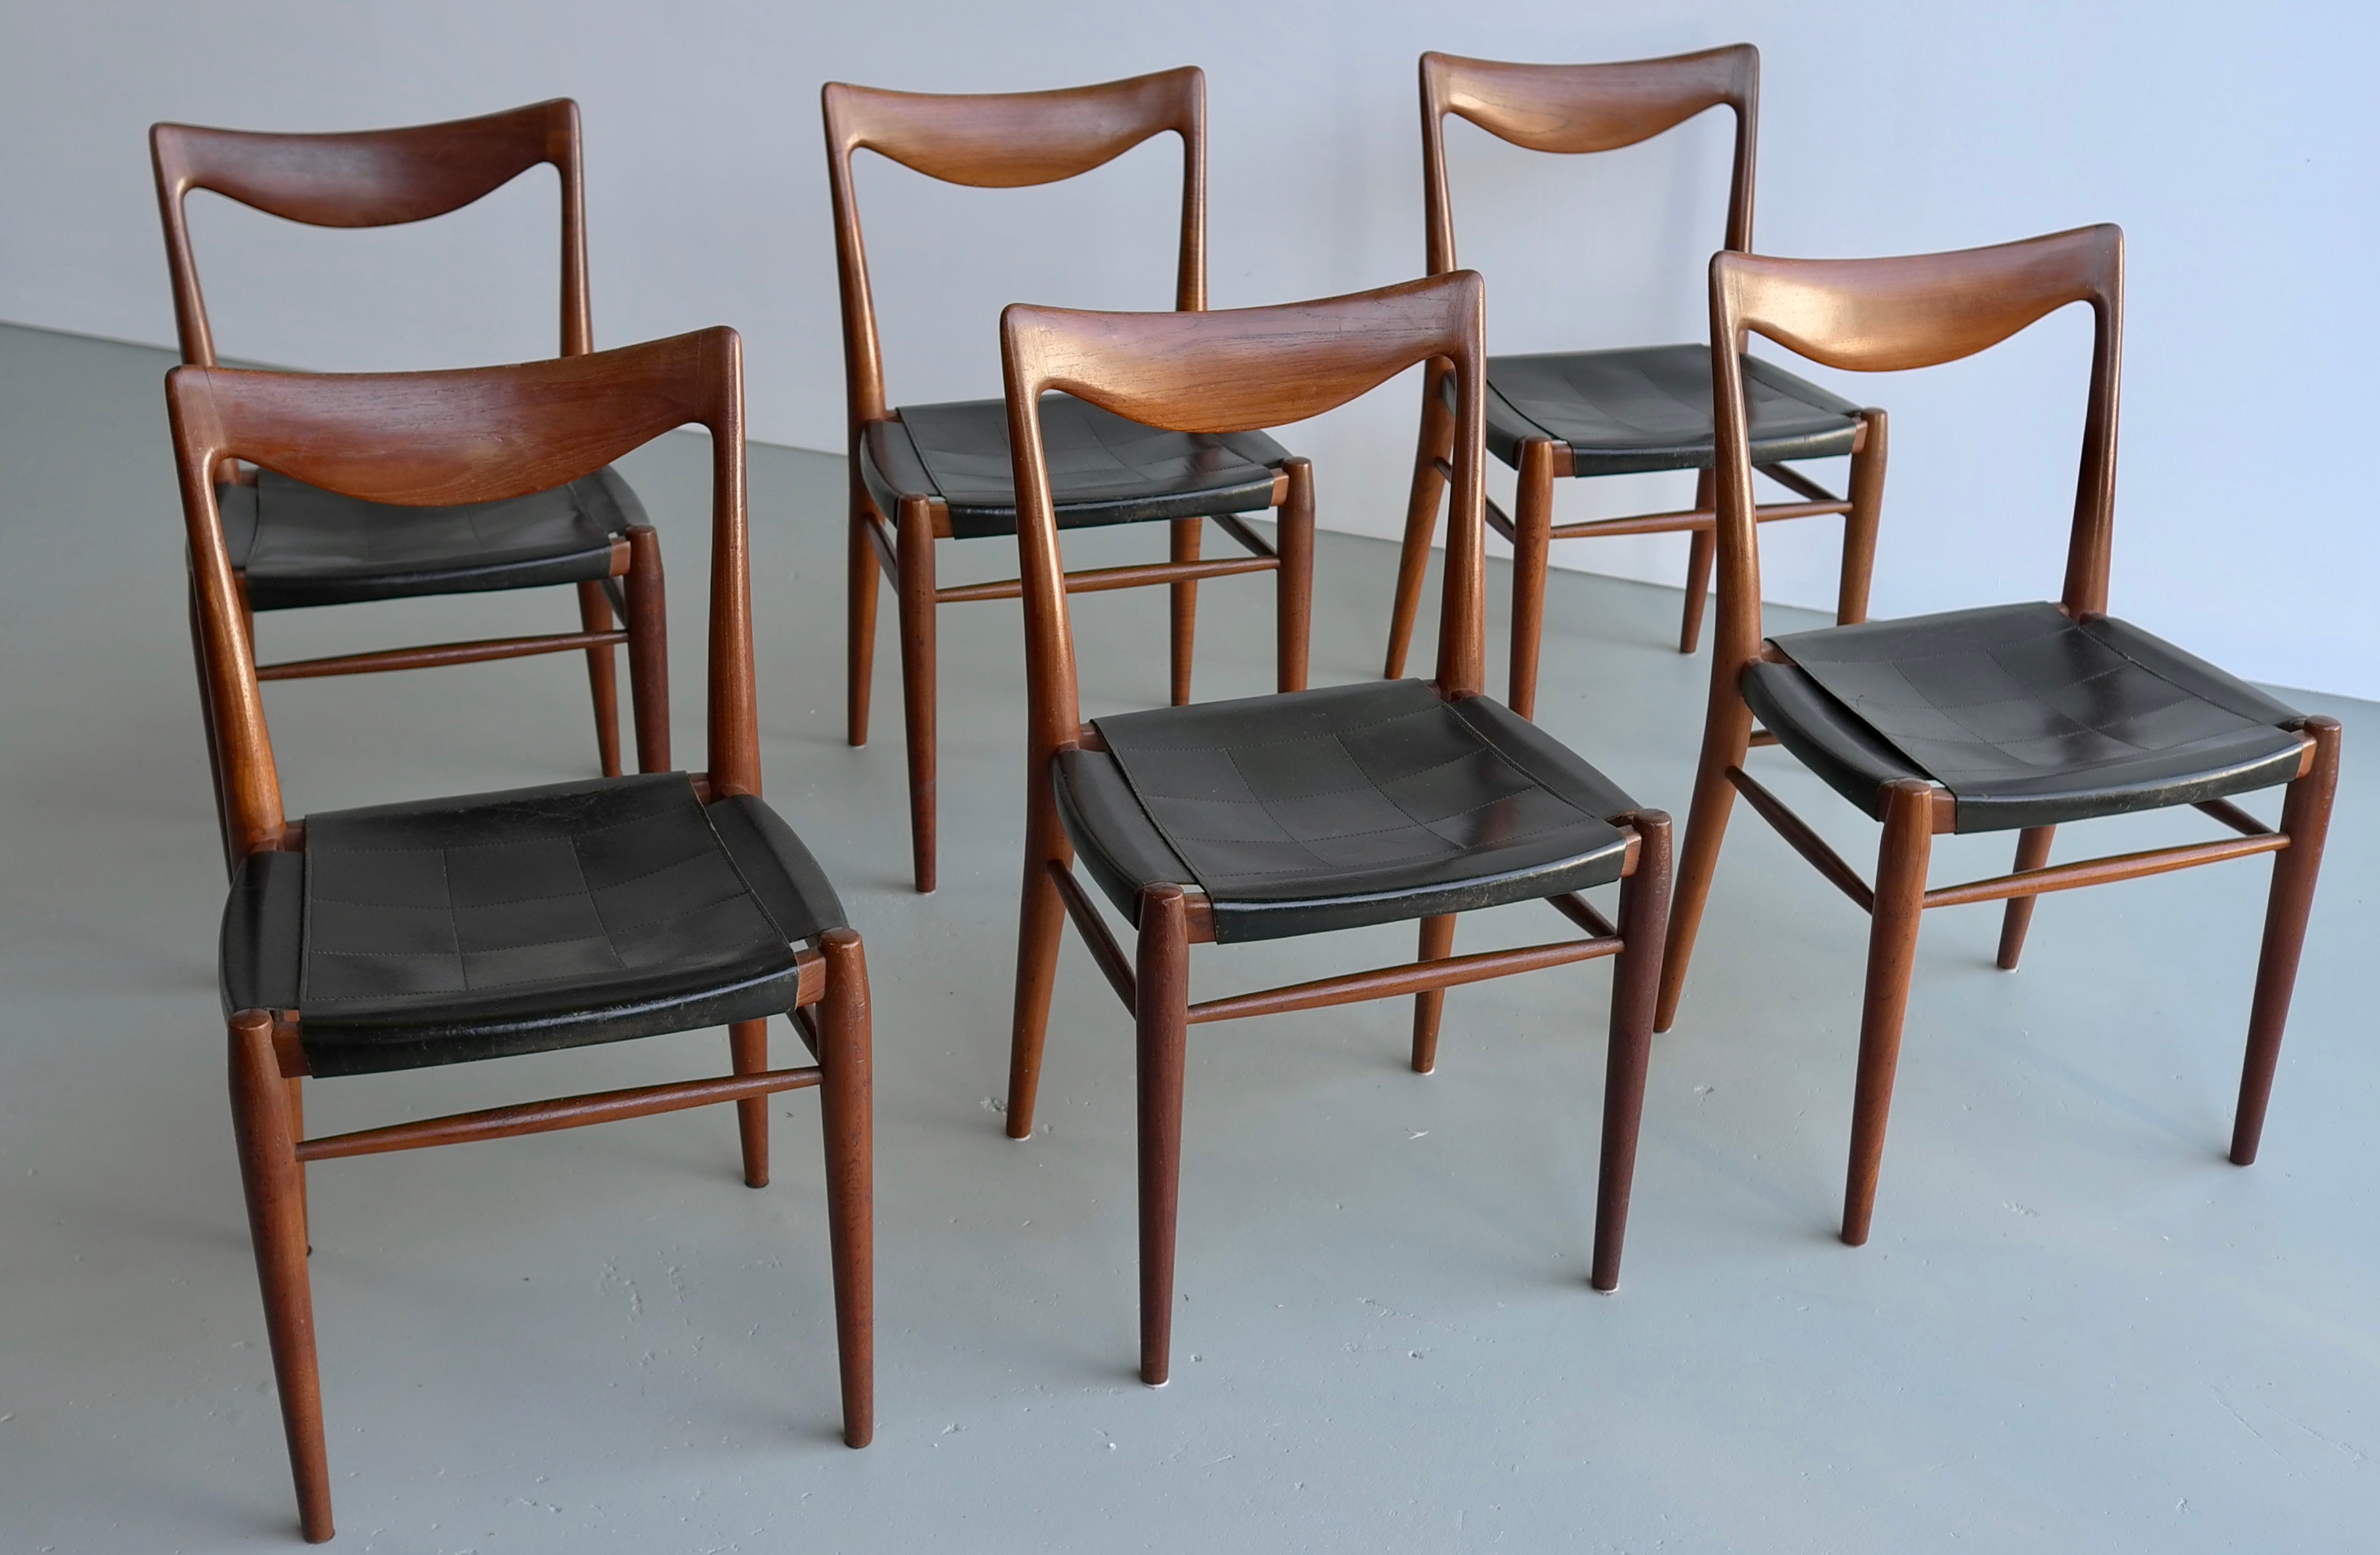 Rastad et Relling six chaises Bambi en teck et cuir, Gustav Bahus, années 1960.
Ces chaises ont leur assise d'origine en cuir noir.